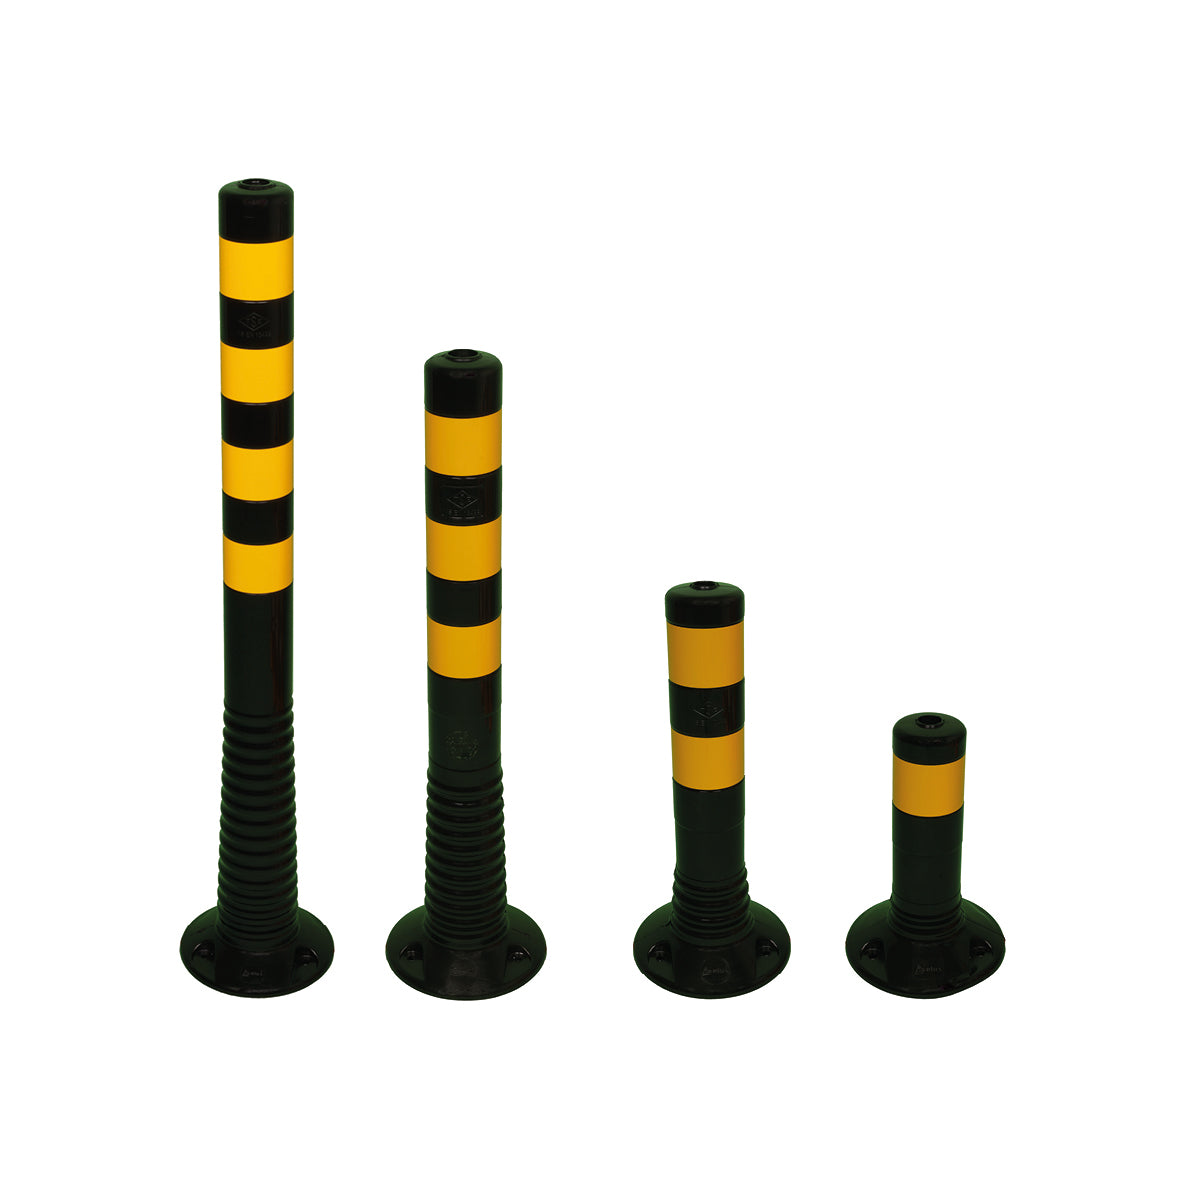 Flexipfosten, schwarz, ø 80 mm, 1000 mm, 4 gelb reflektierende Streifen, 1,48 kg